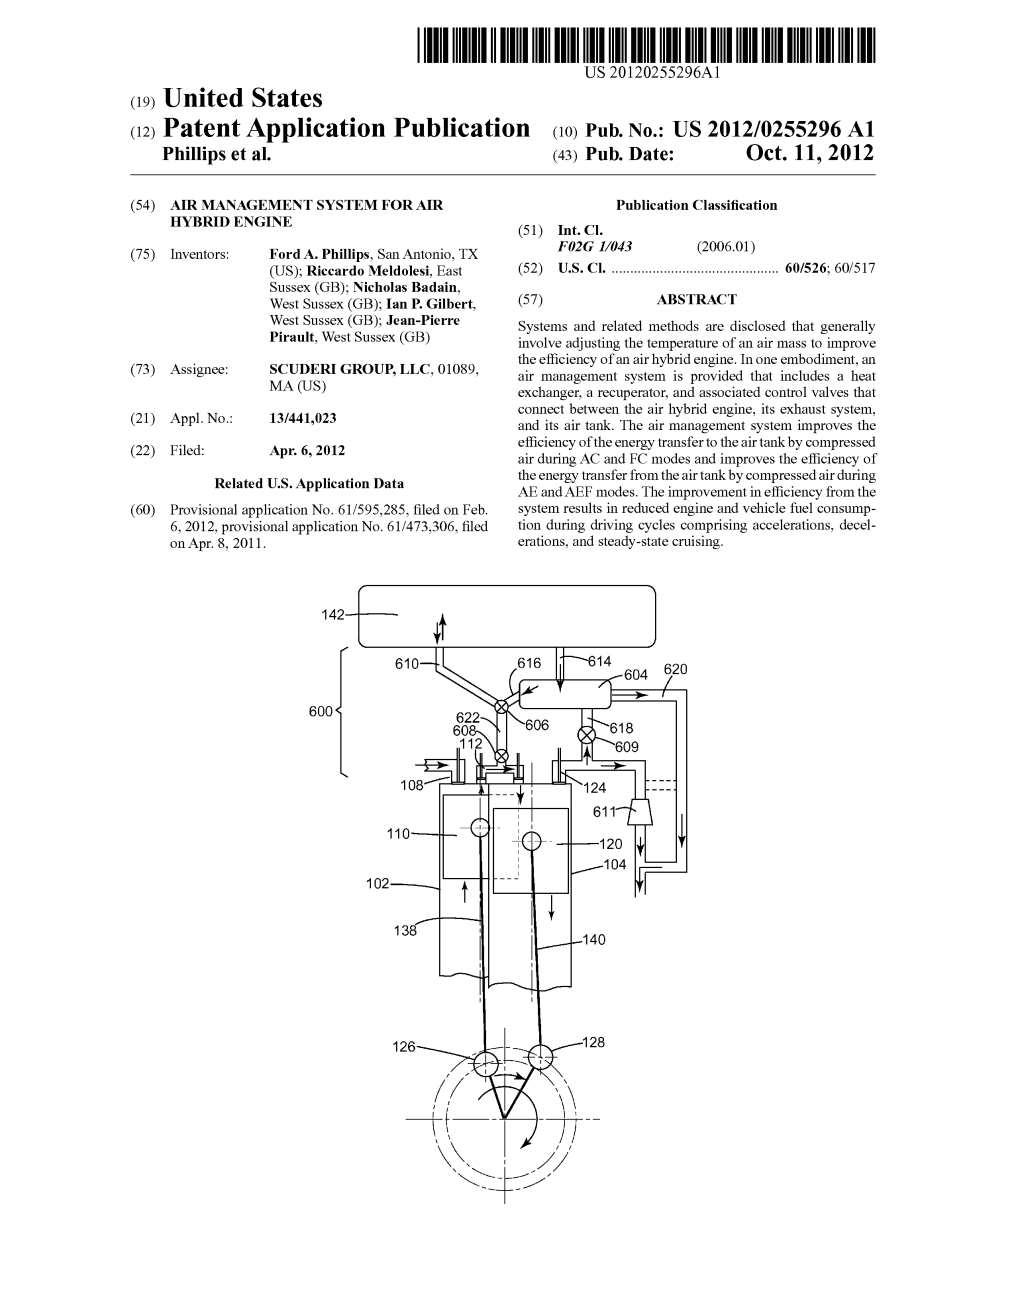 (12) Patent Application Publication (10) Pub. No.: US 2012/0255296A1 Phillips Et Al